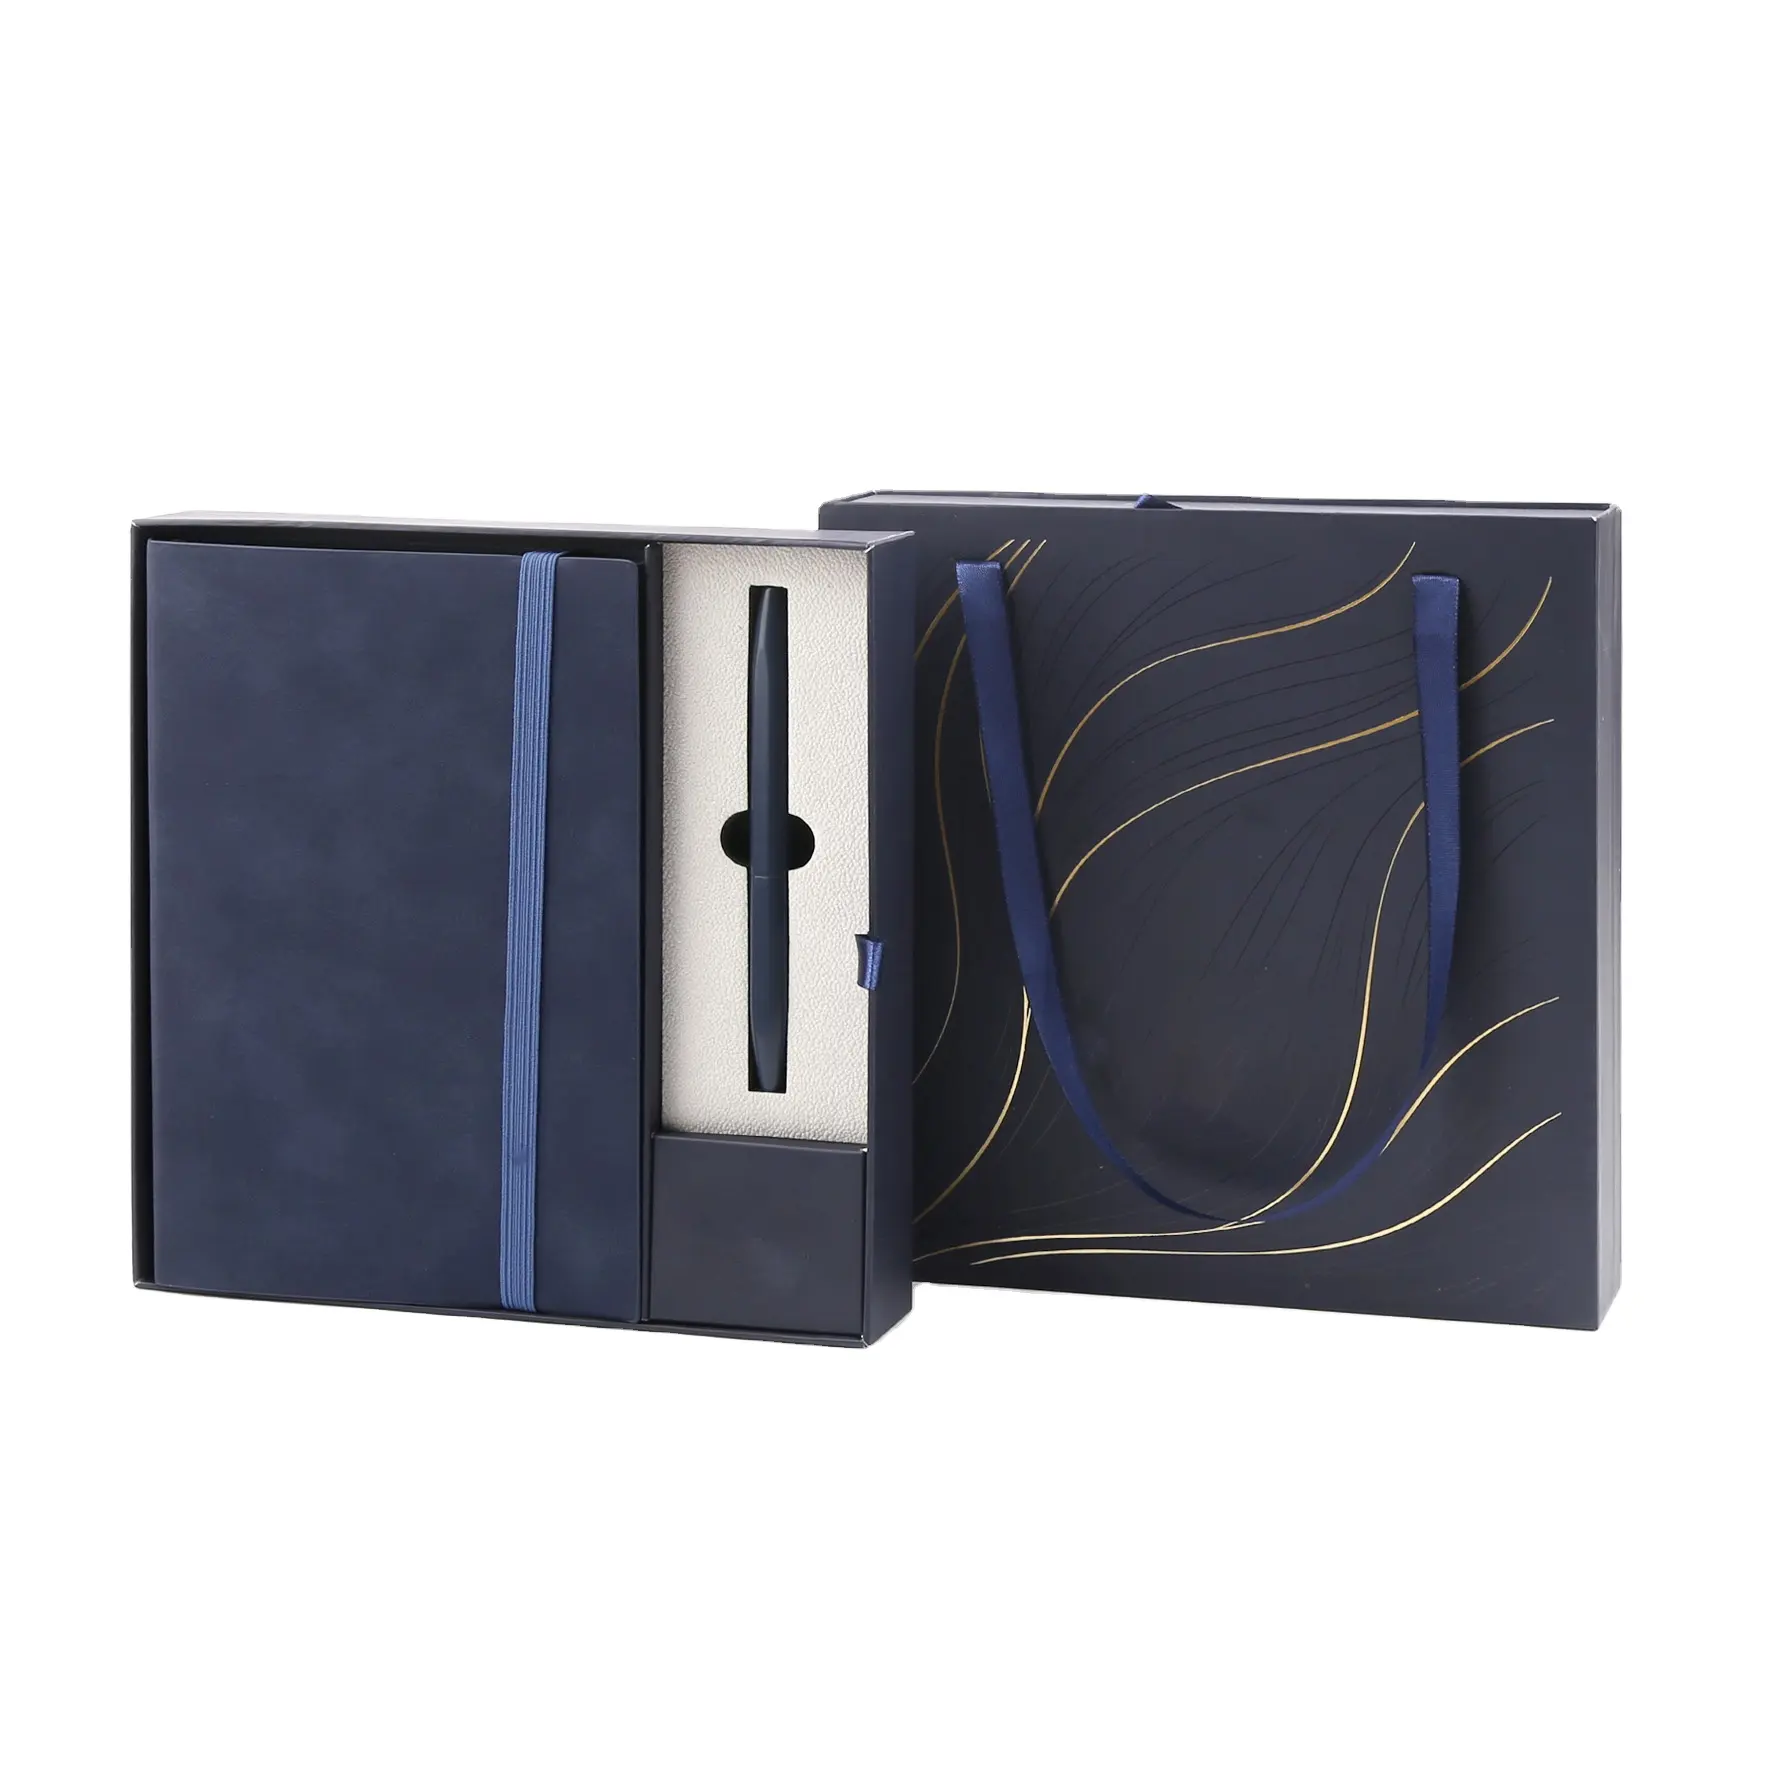 TTX Articles de cadeaux de luxe promotionnels Cahier de notes Cadeau d'affaires Cahier personnalisable Coffret cadeau avec stylo